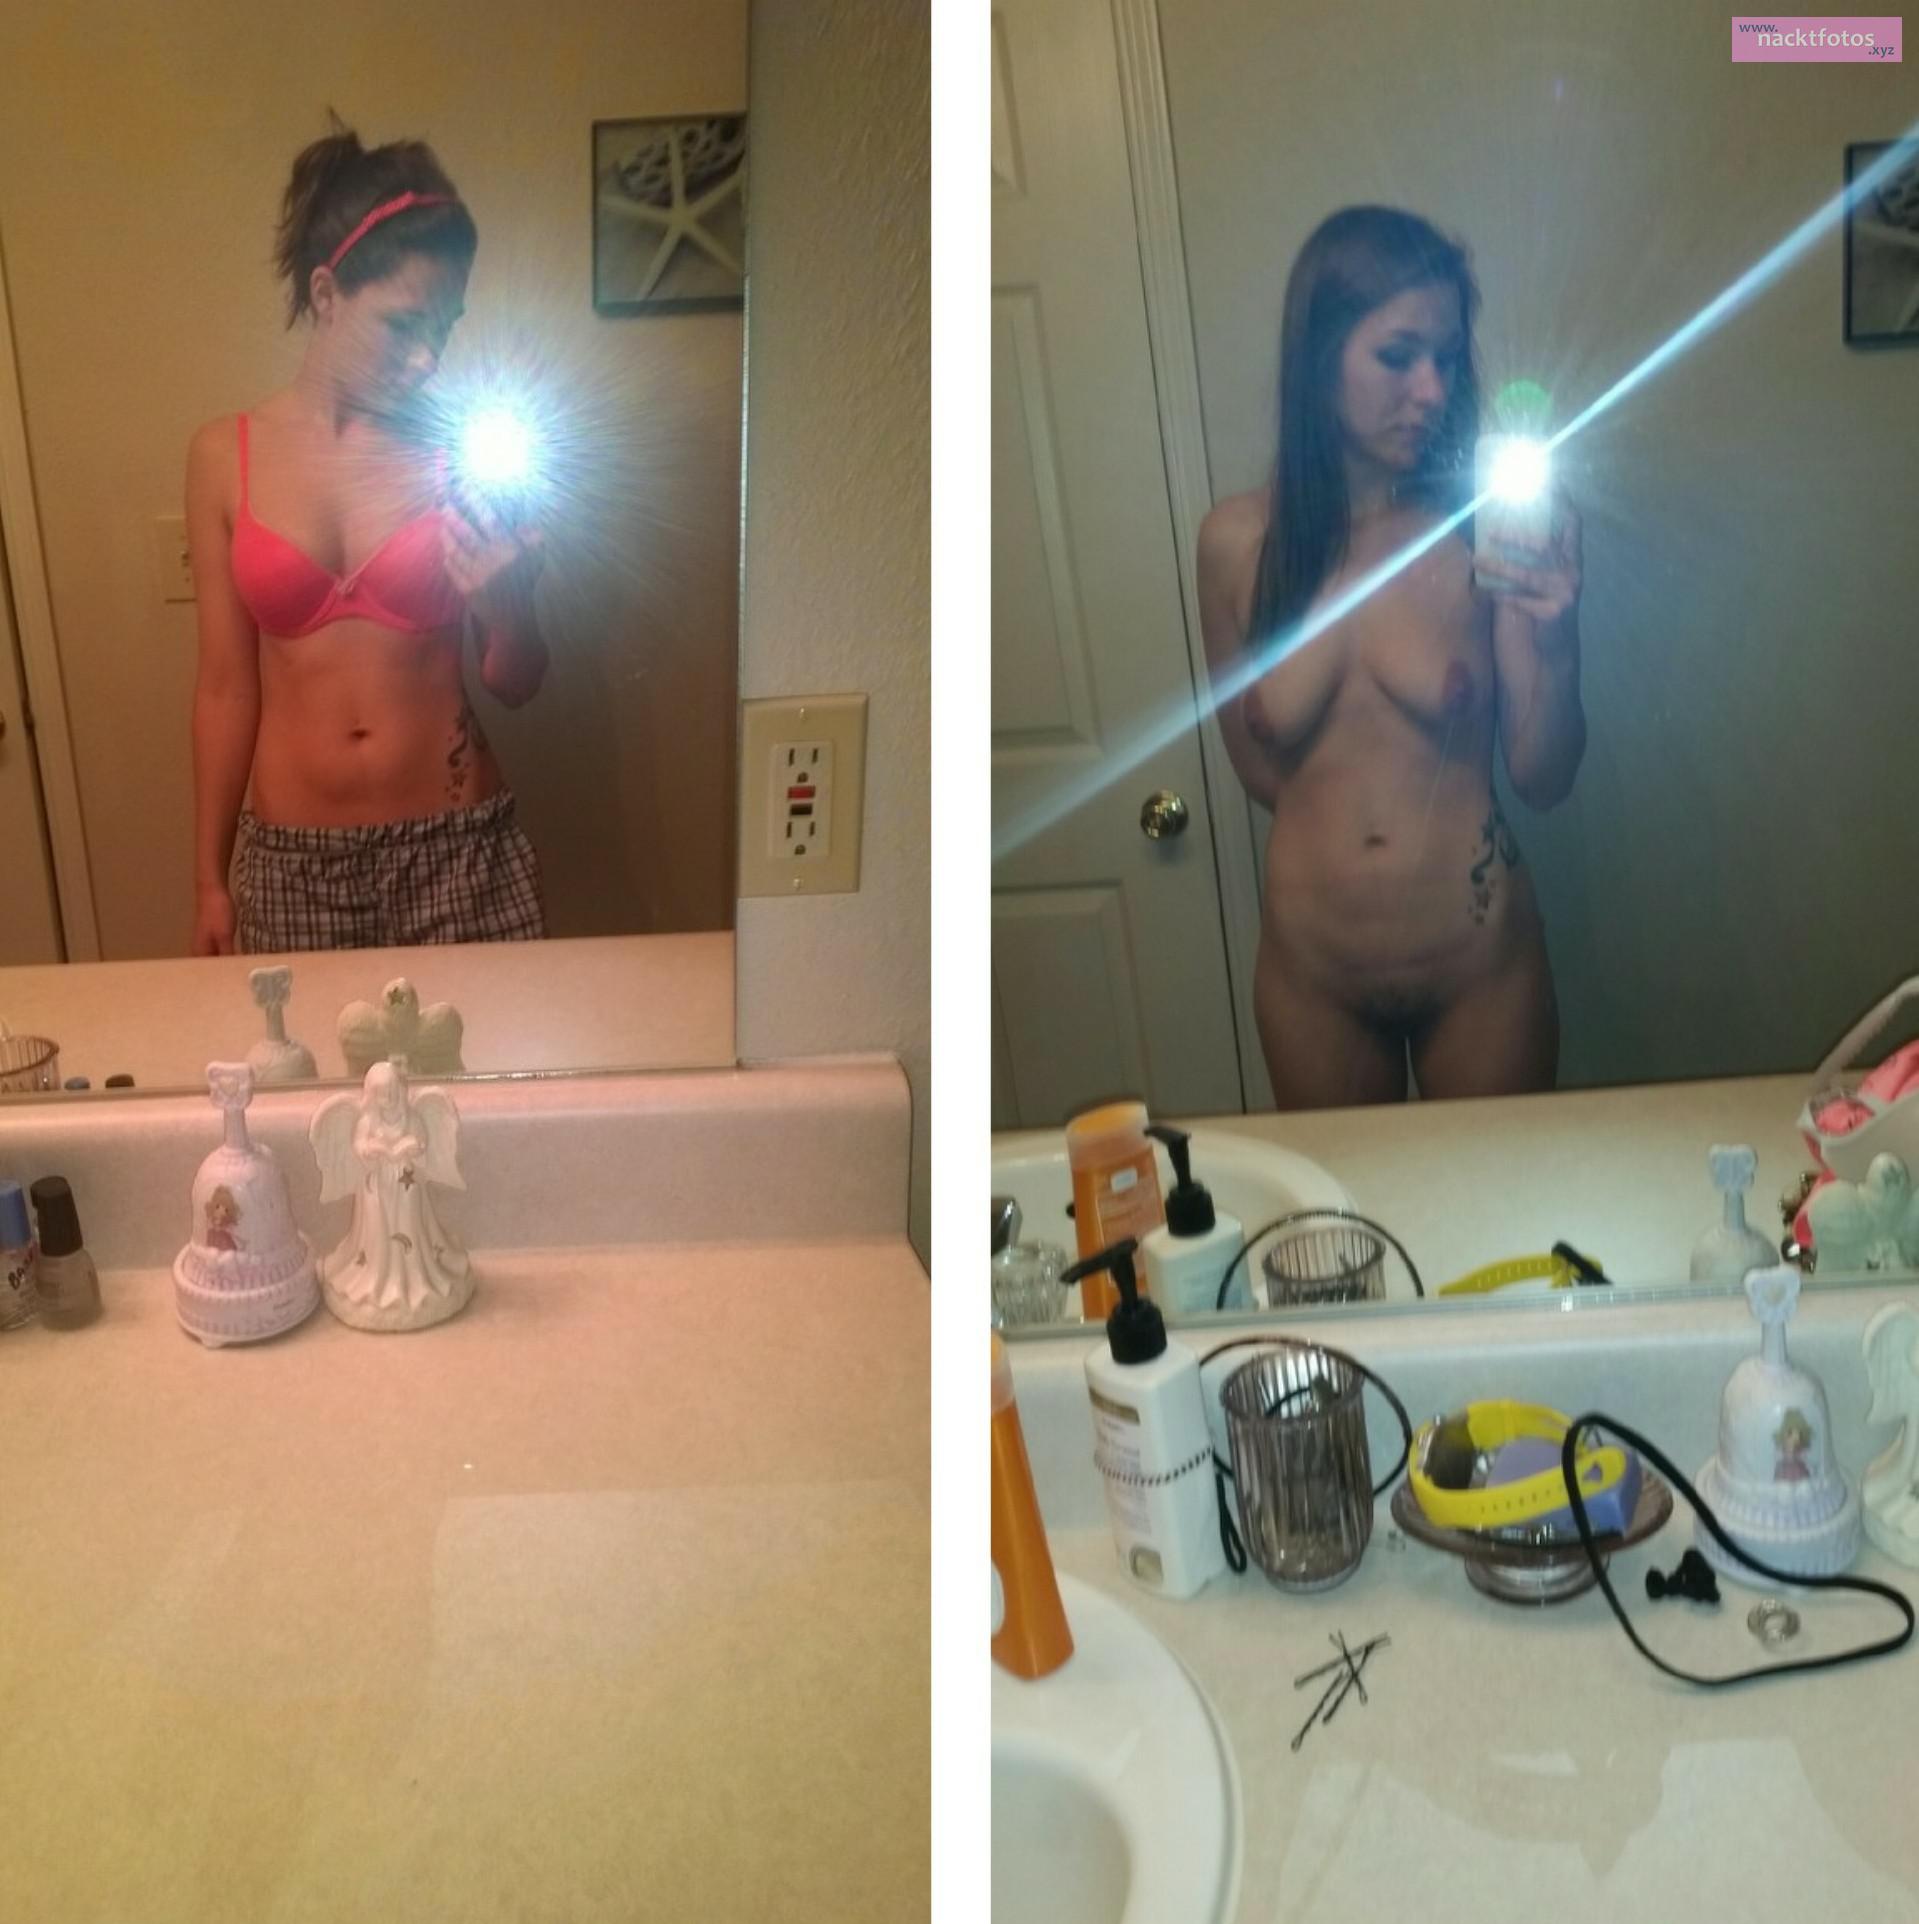 whatsapp spiegel nackt selfie Nacktfotos privat - Intime Momente zu zweit u...